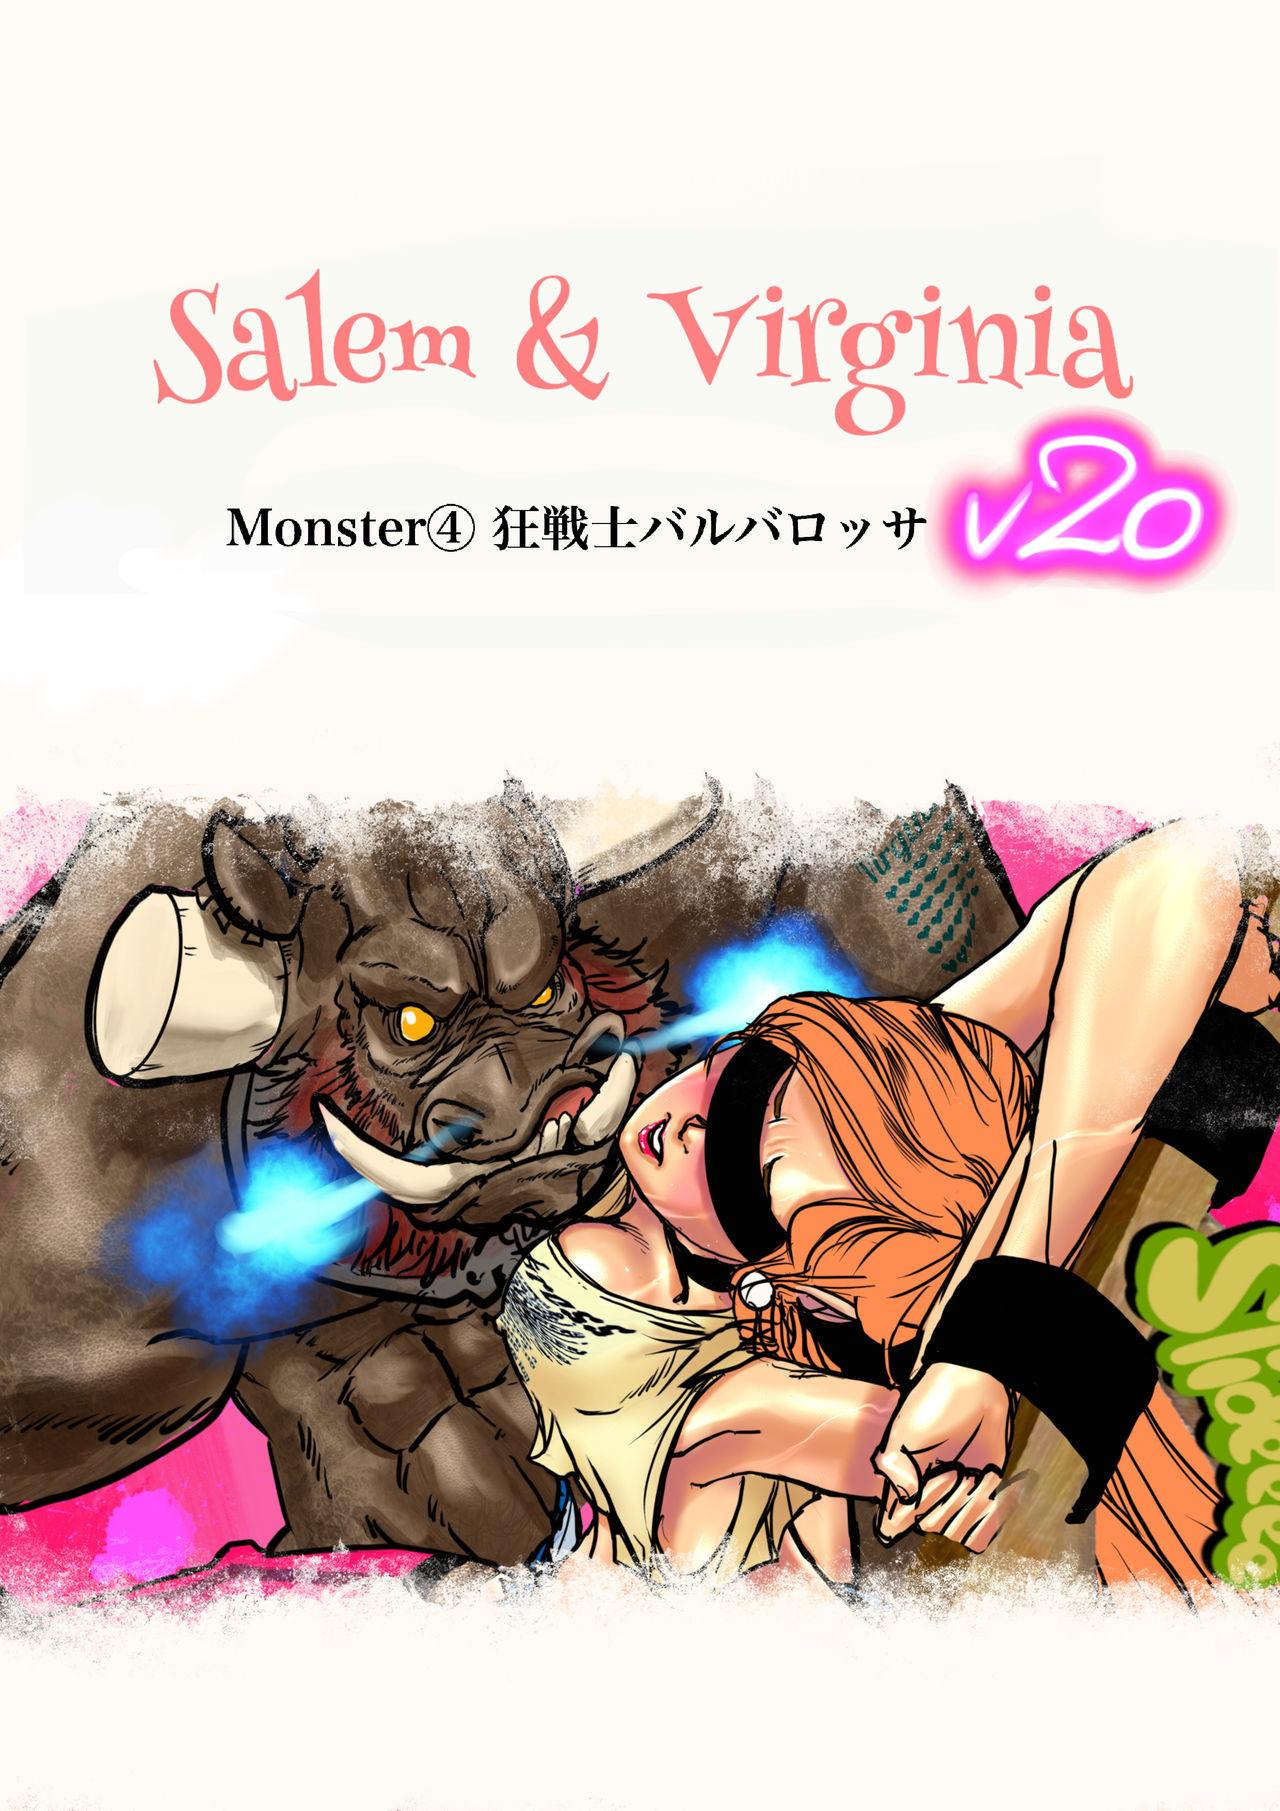 Salem & Virginia 139